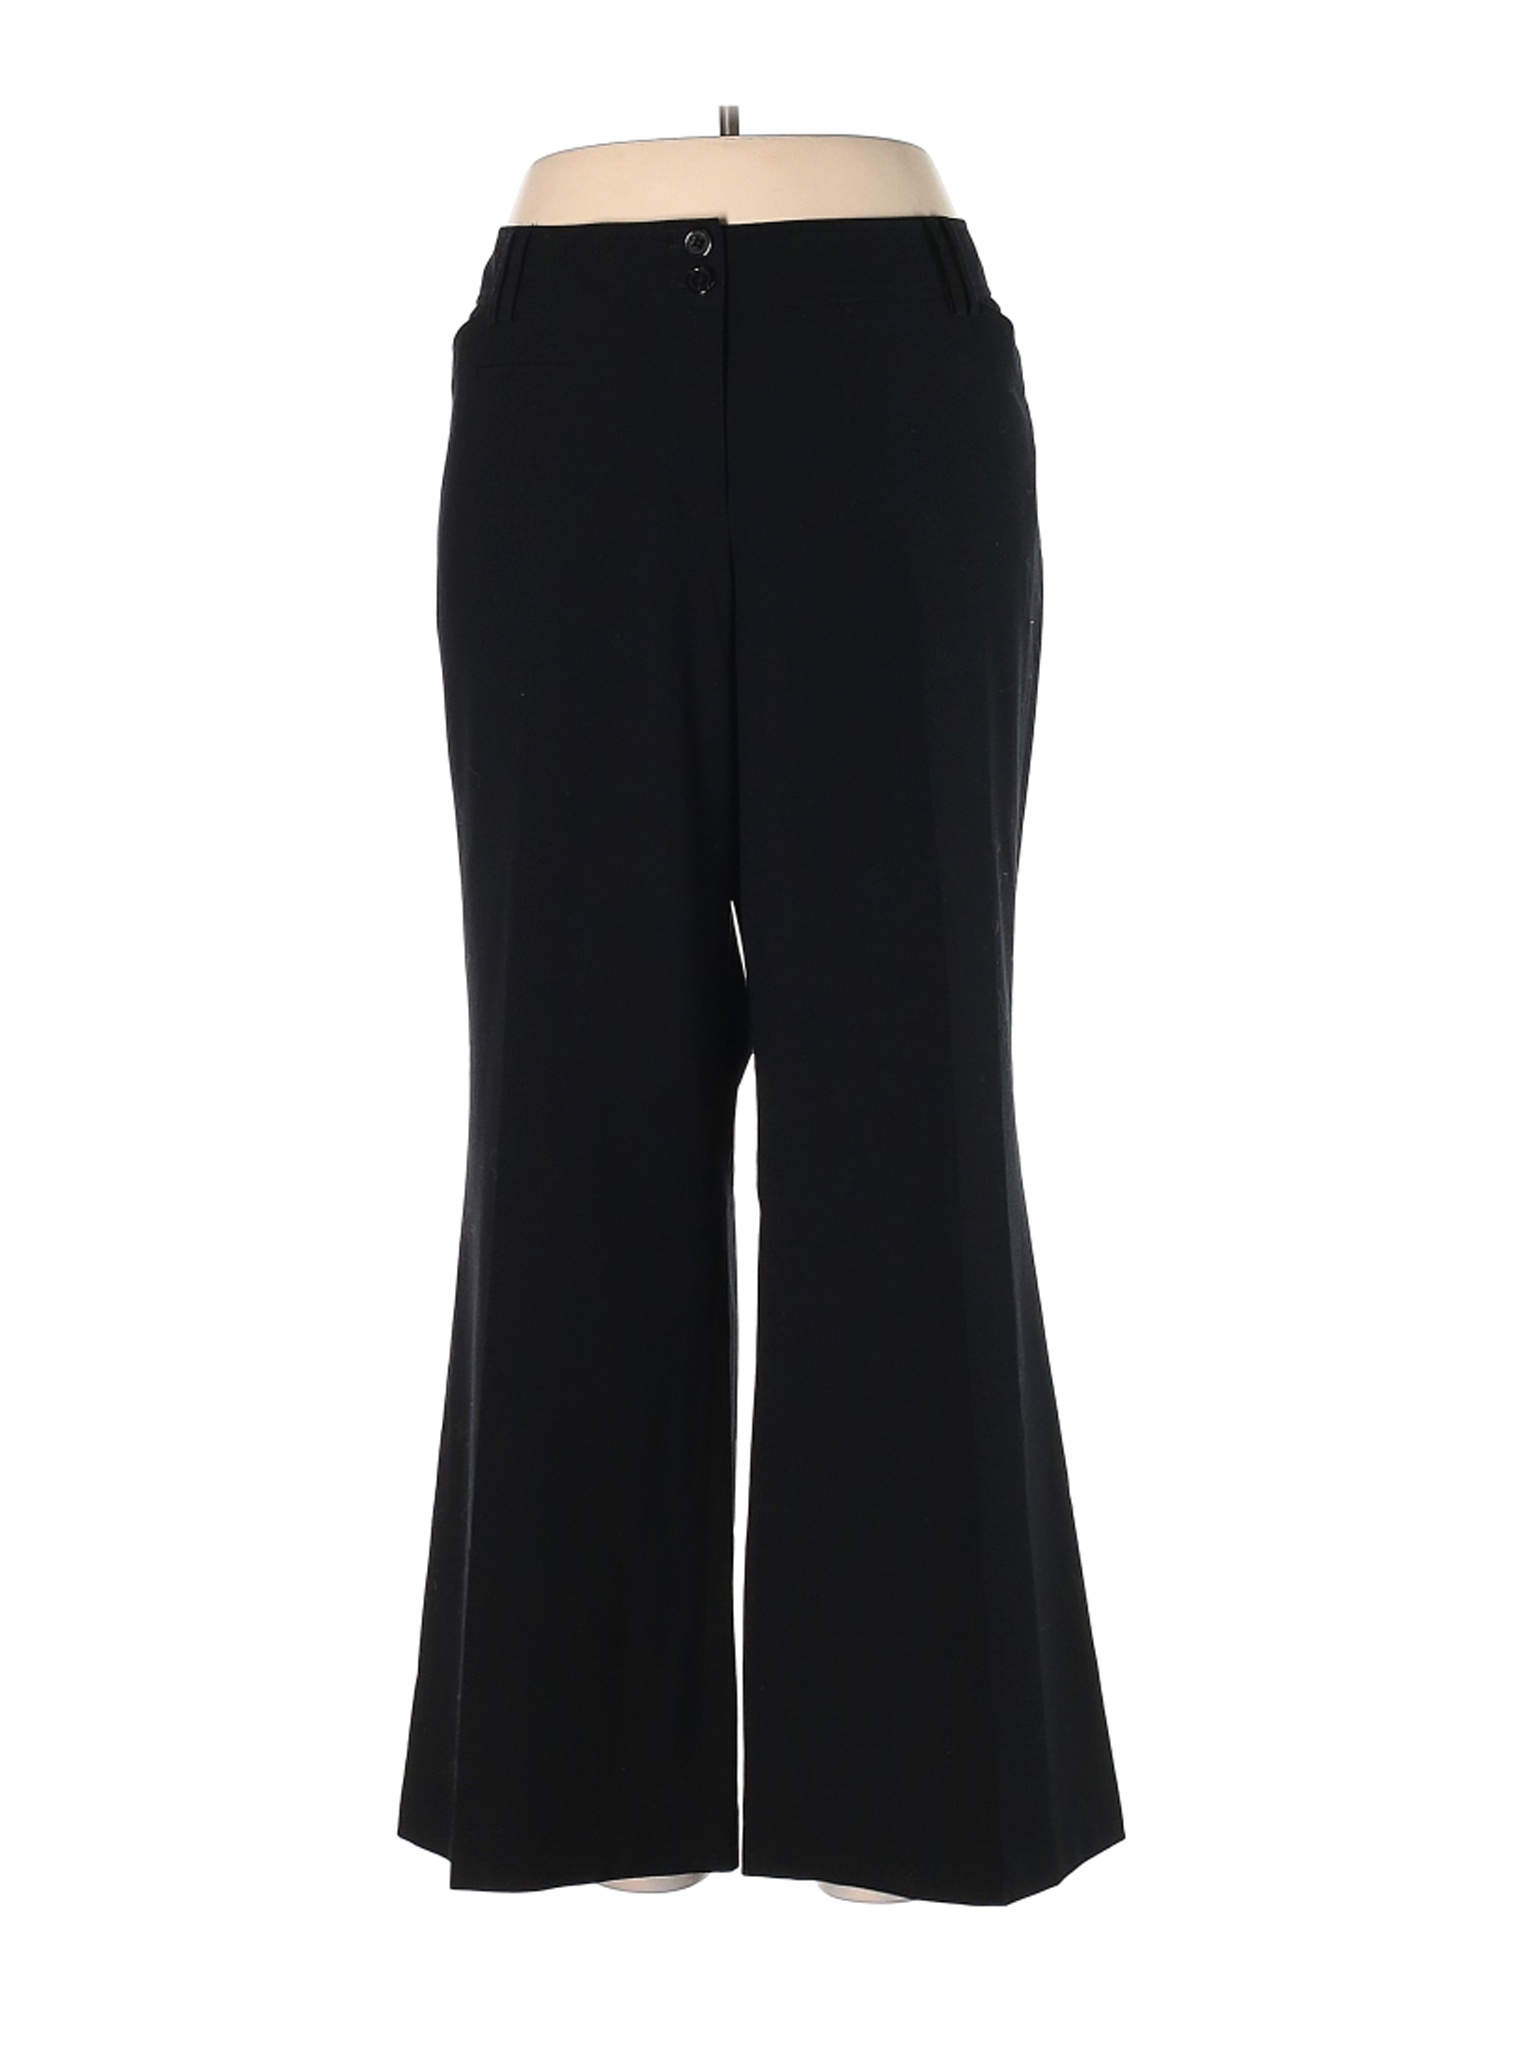 Lane Bryant Women Black Dress Pants 4 Petites | eBay